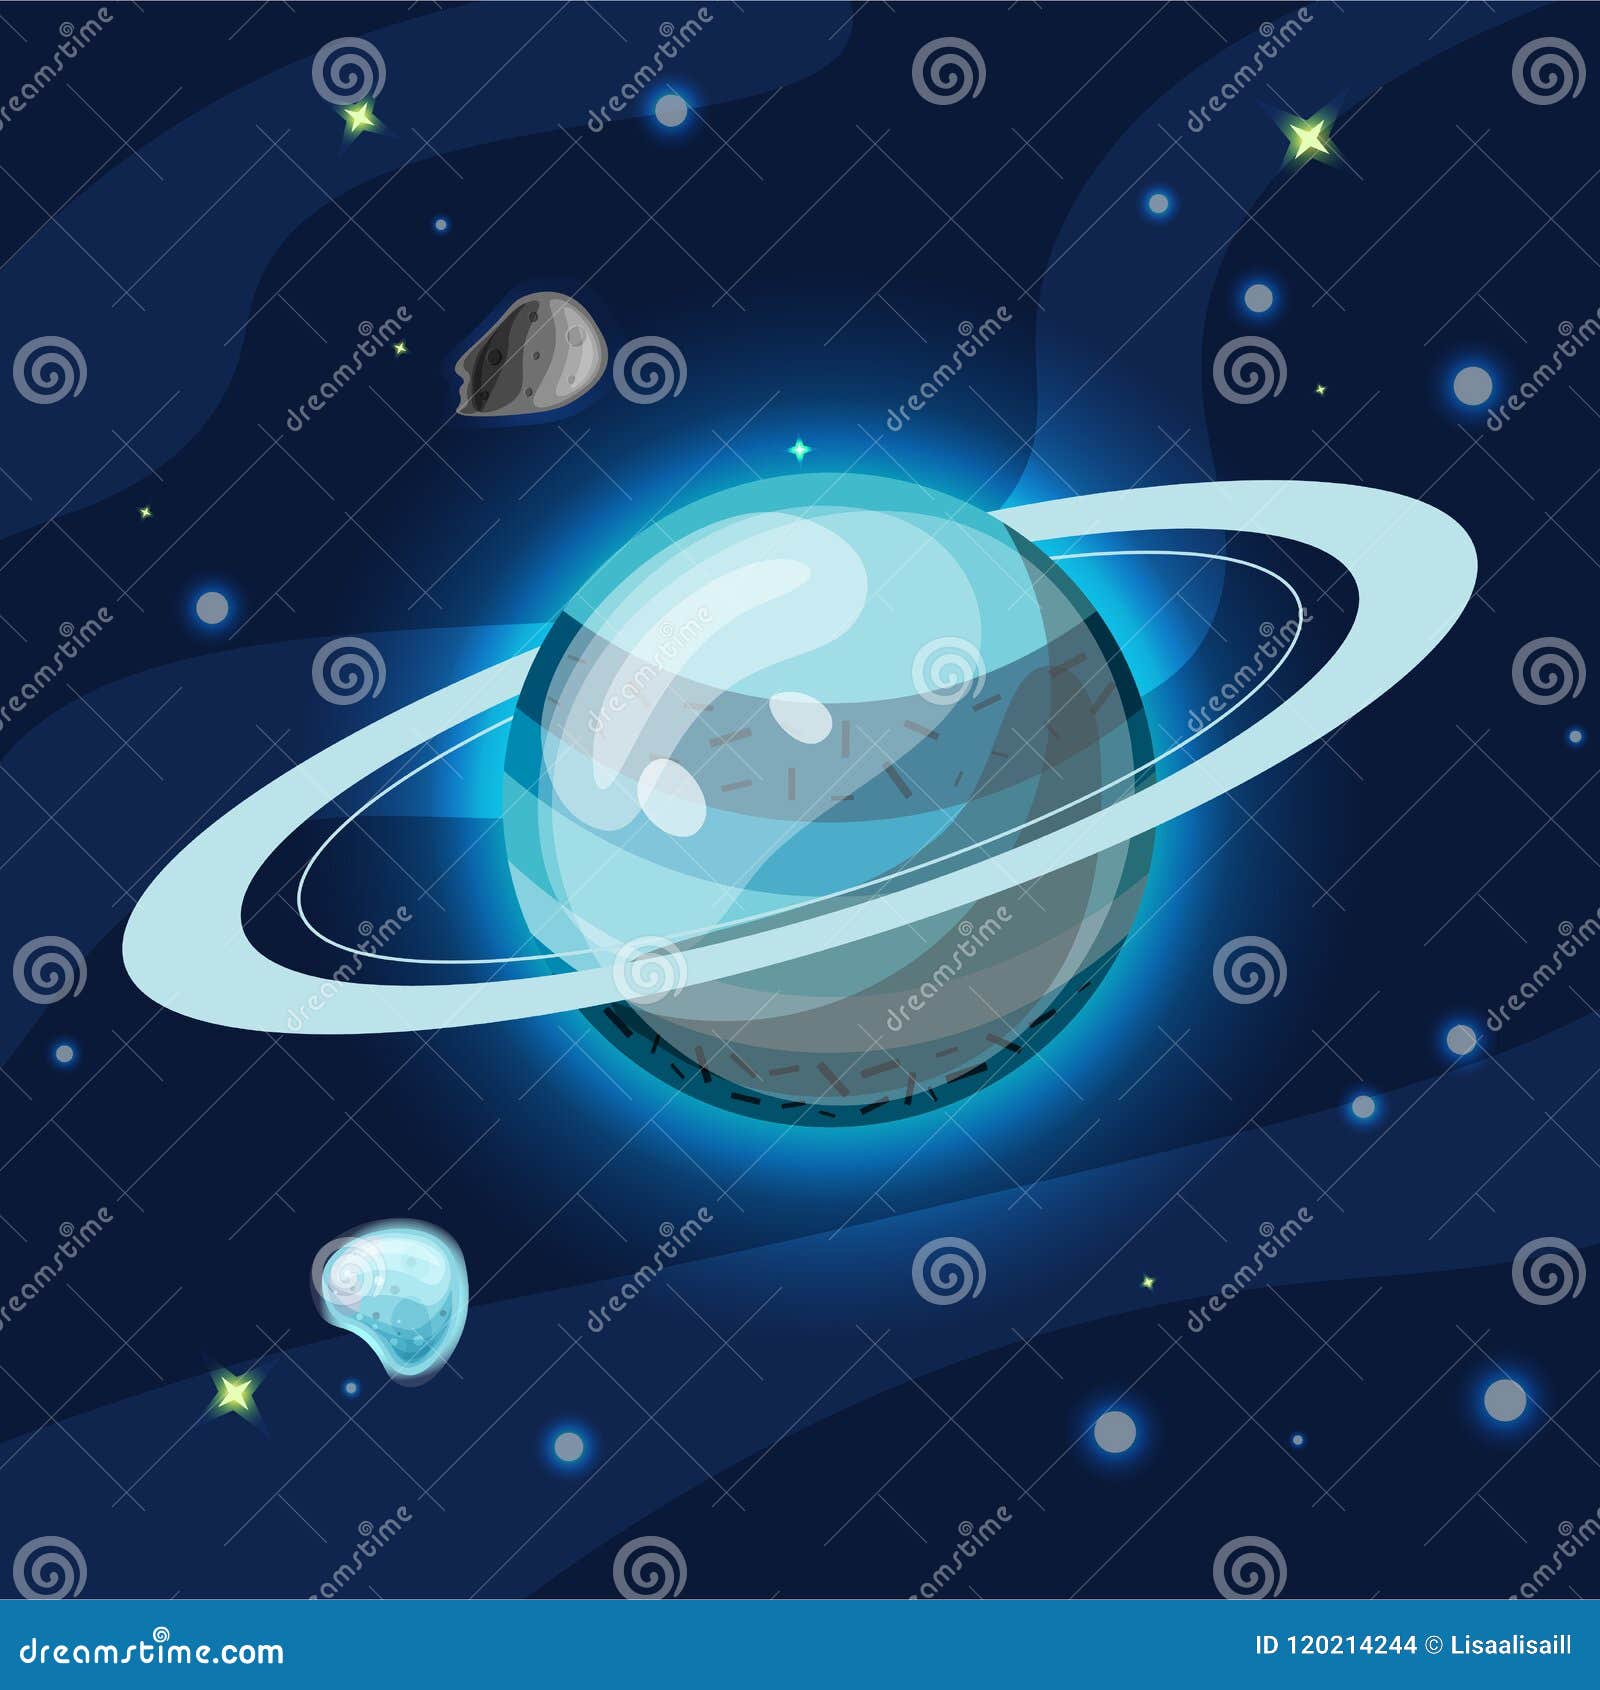 Картинка уран для детей. Планета Уран для детей дошкольного возраста. Уран Планета иллюстрация. Изображение планеты Уран для детей. Уран в космосе для детей.